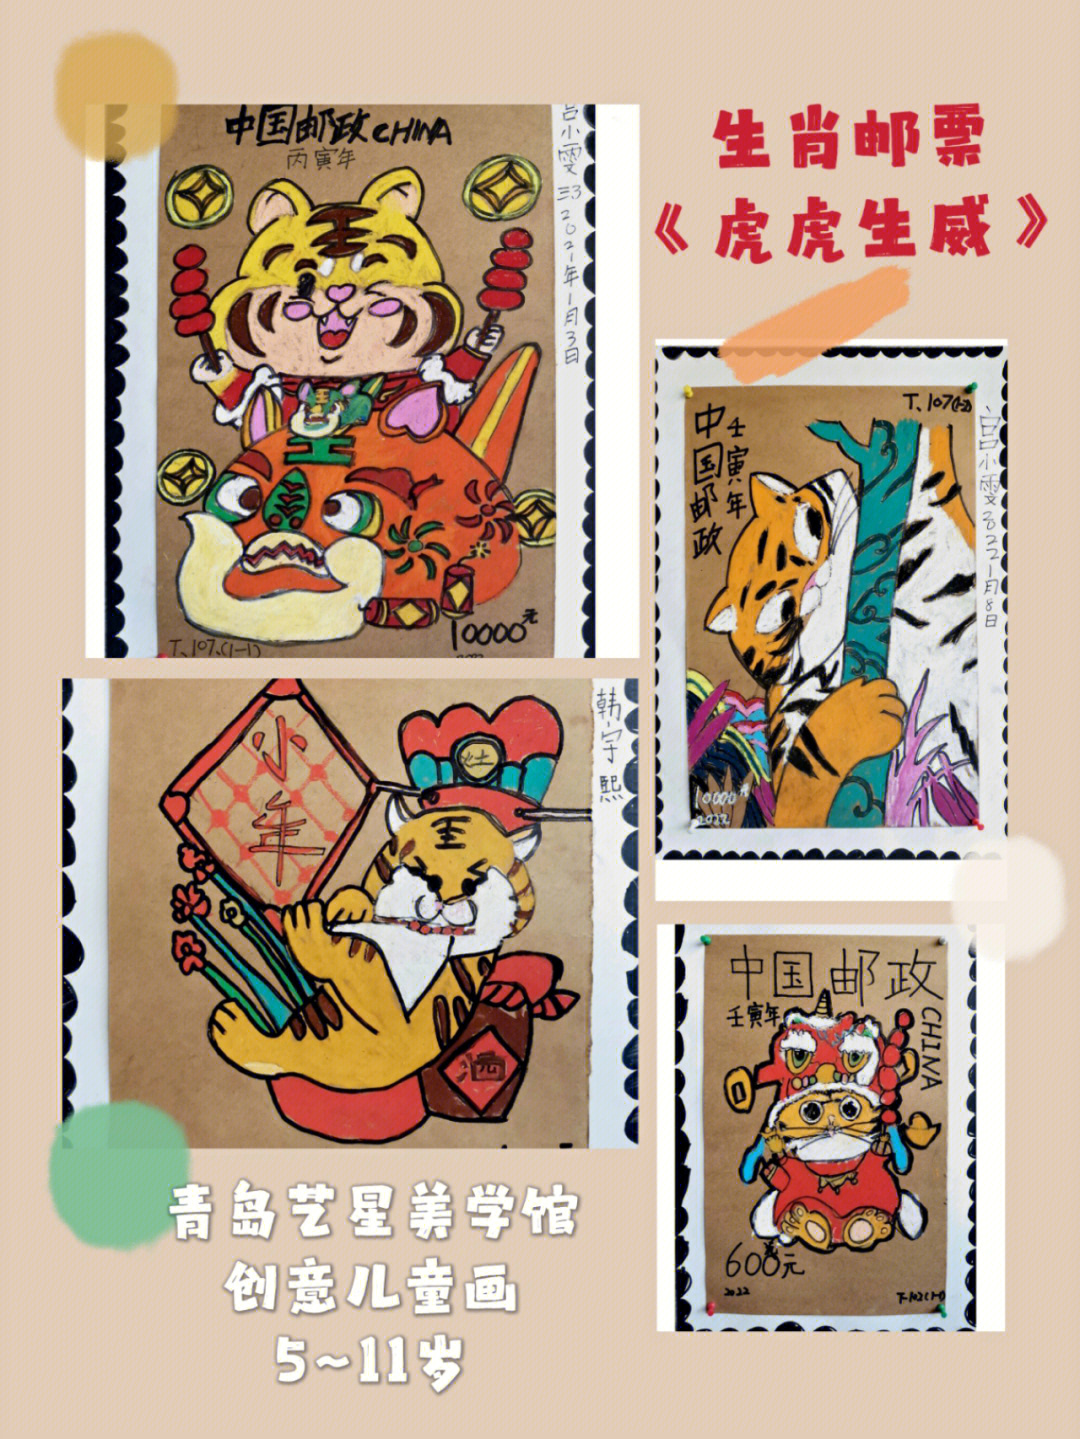 卡通老虎邮票图片图片